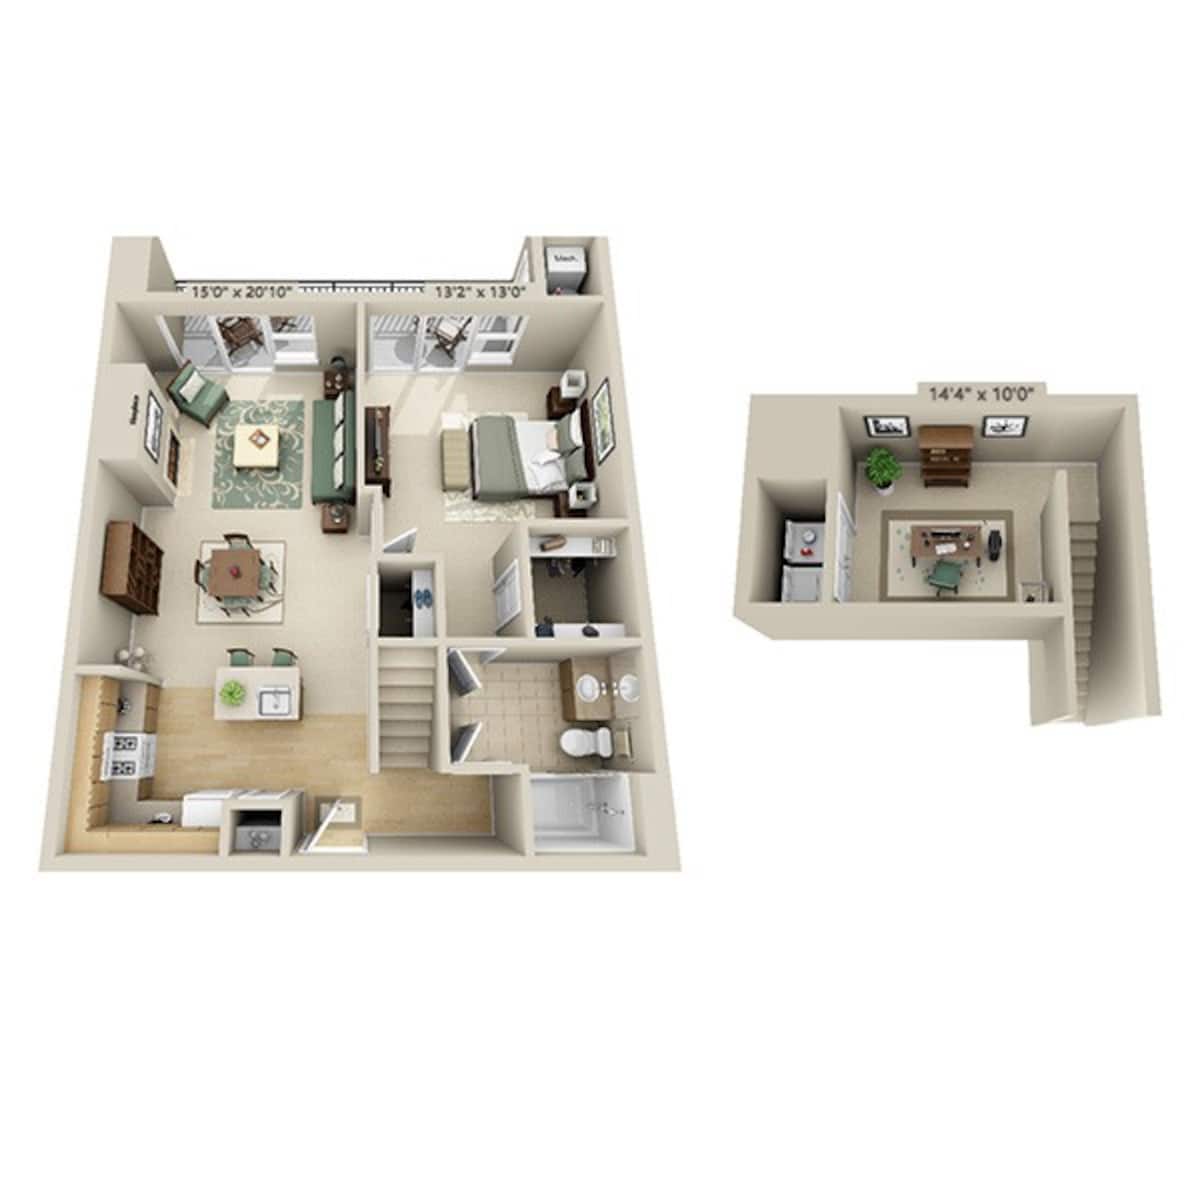 Floorplan diagram for One Bedroom Loft A1DL, showing 1 bedroom